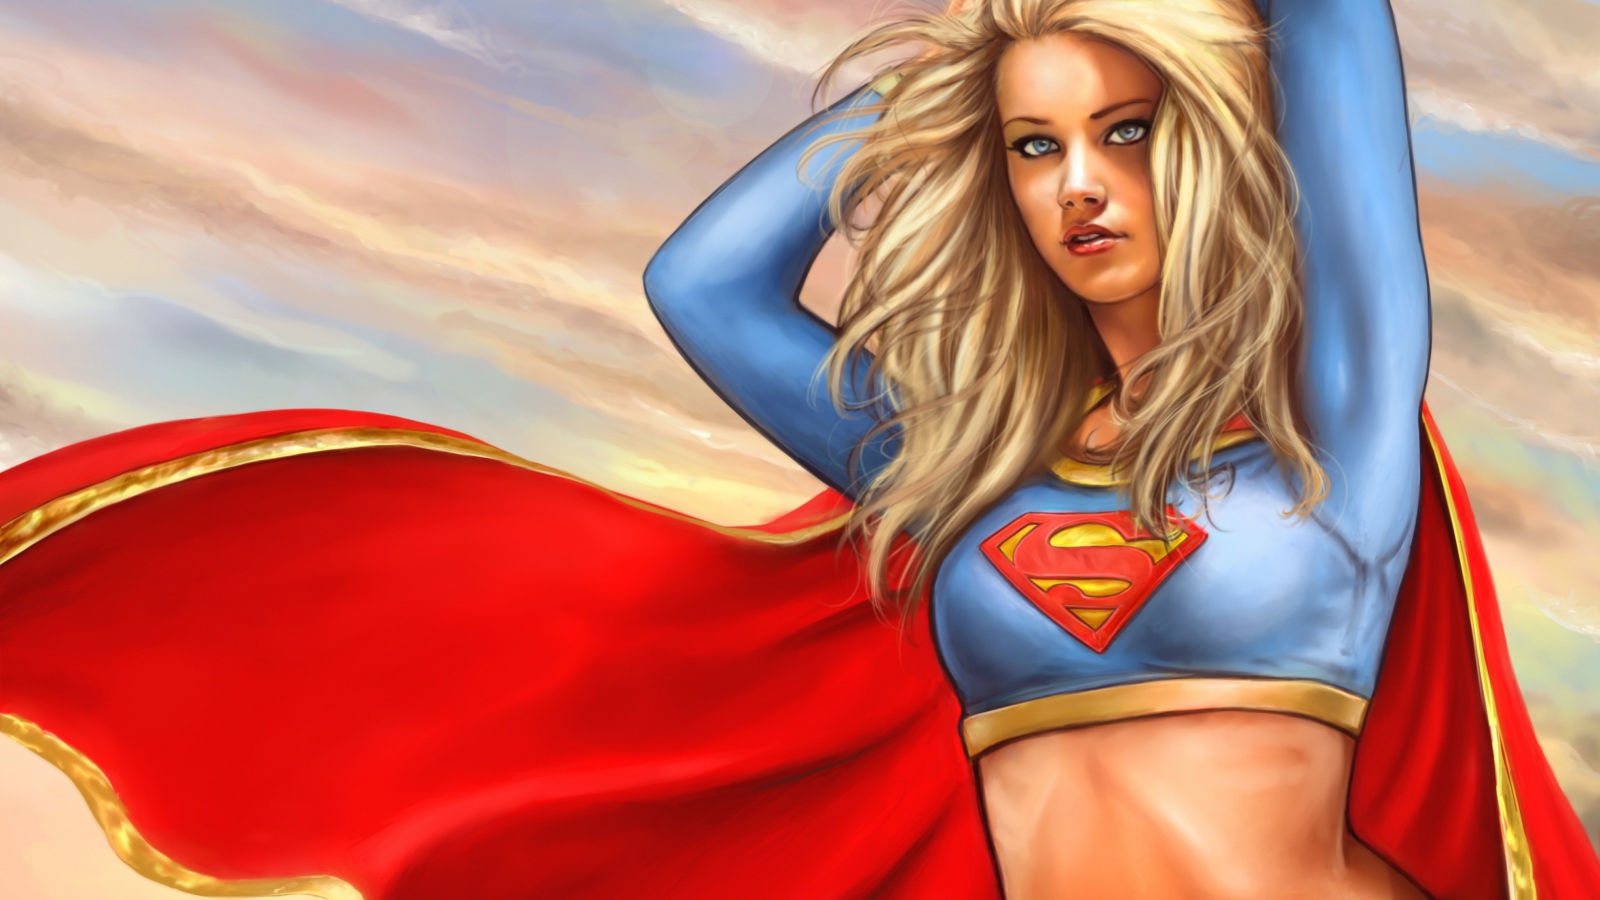 Marvel Supergirl DC Comics wallpaper 1600x900